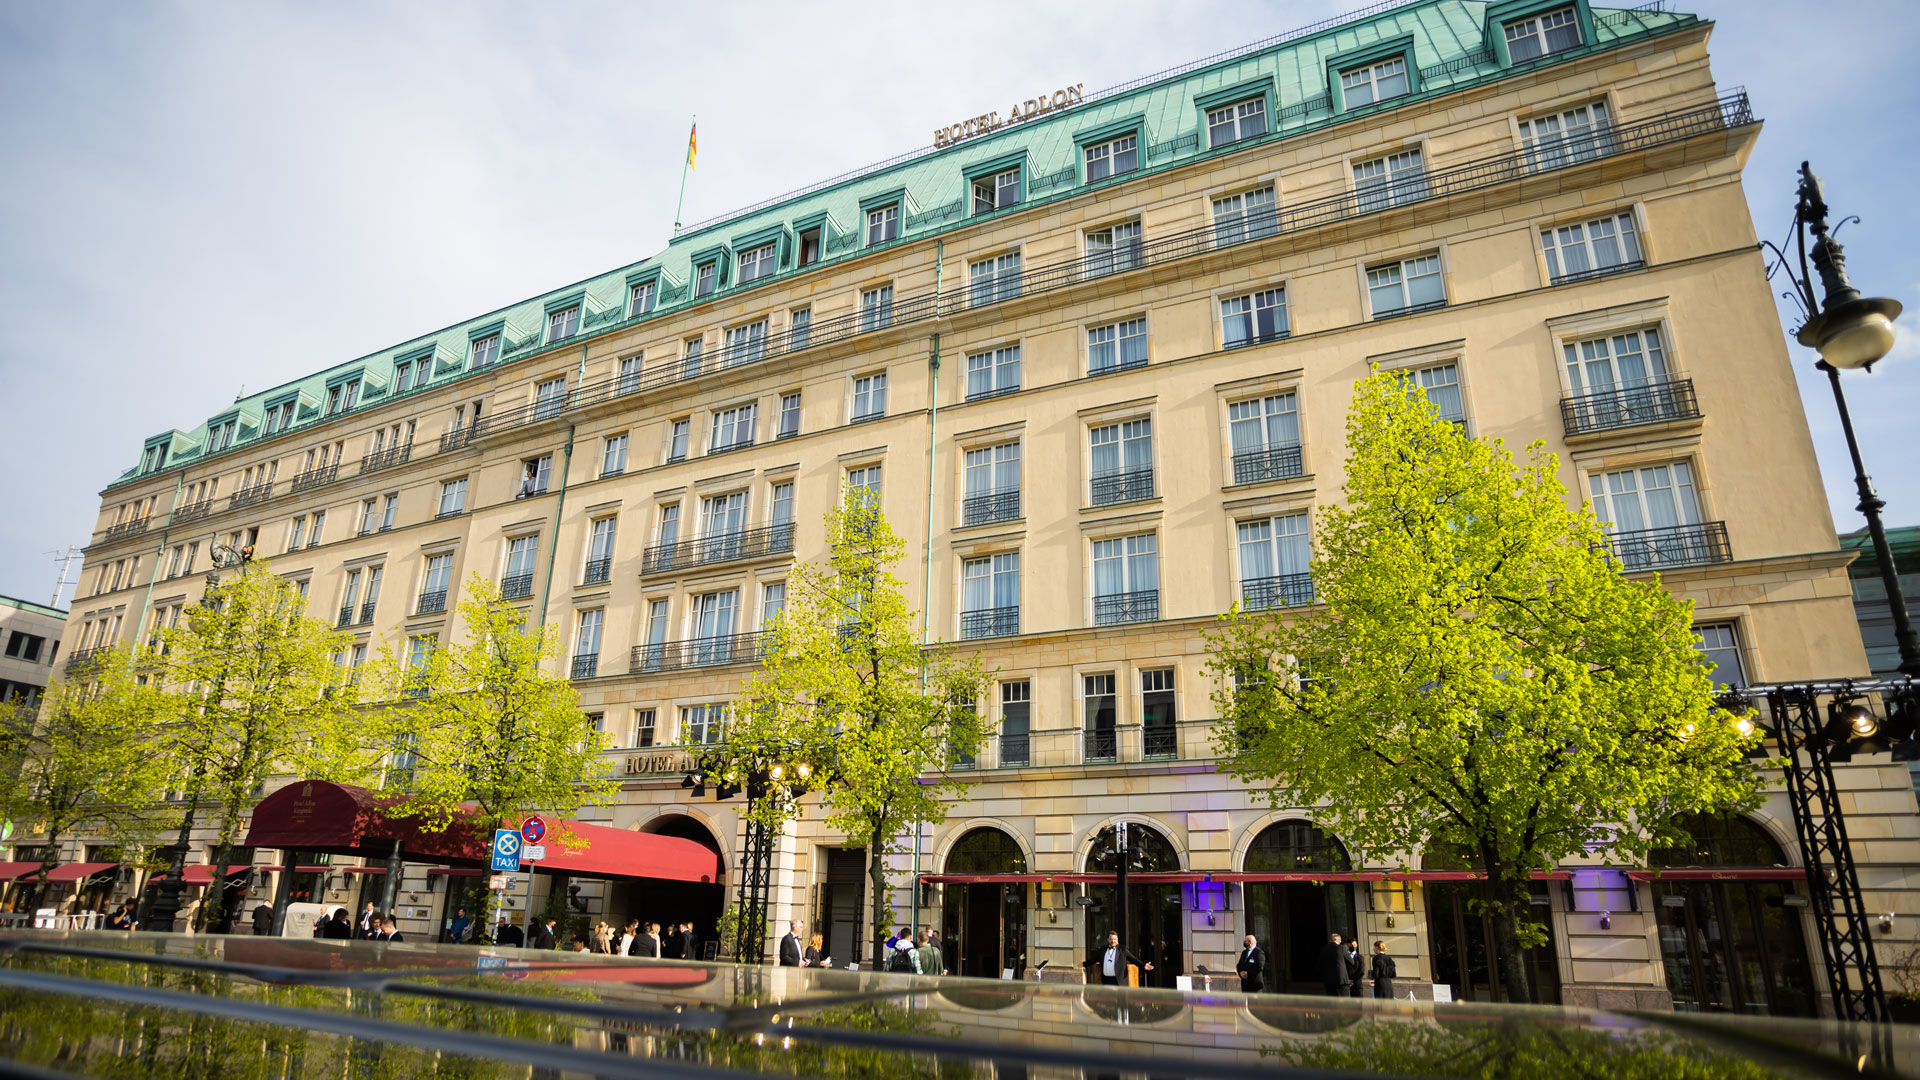 Das Hotel Adlon in Berlin. | picture alliance/dpa